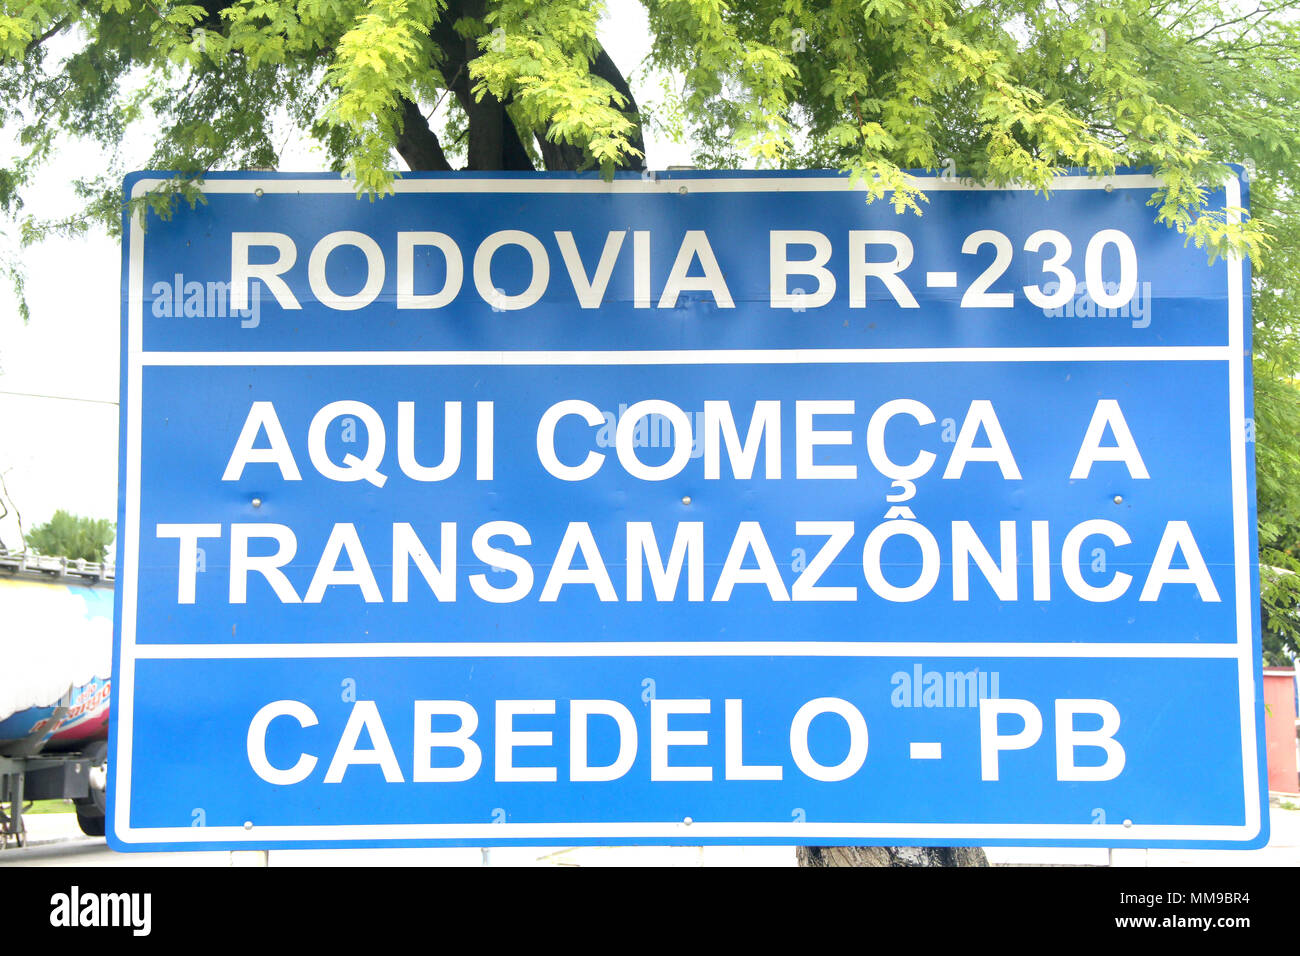 AQUI COMEÇA a TRANSAMAZÔNICA BR-230 